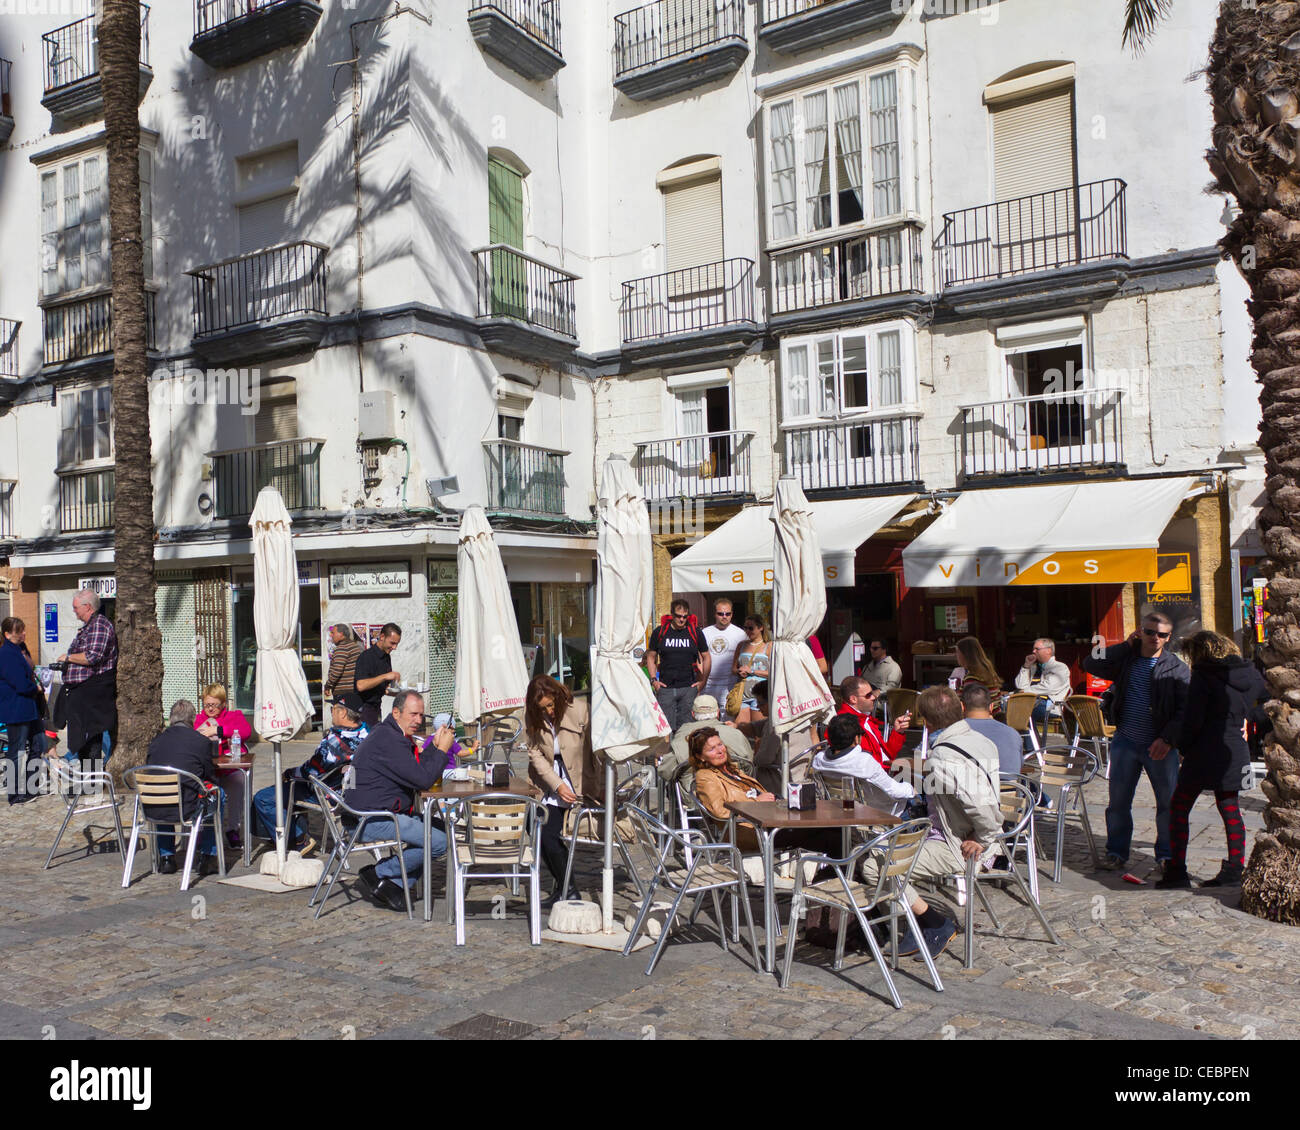 Outdoor-Restuarant in Plaza De La Catedral, Cadiz Spanien. Cadiz ist eine der ältesten kontinuierlich bewohnten Städte Europas. Stockfoto